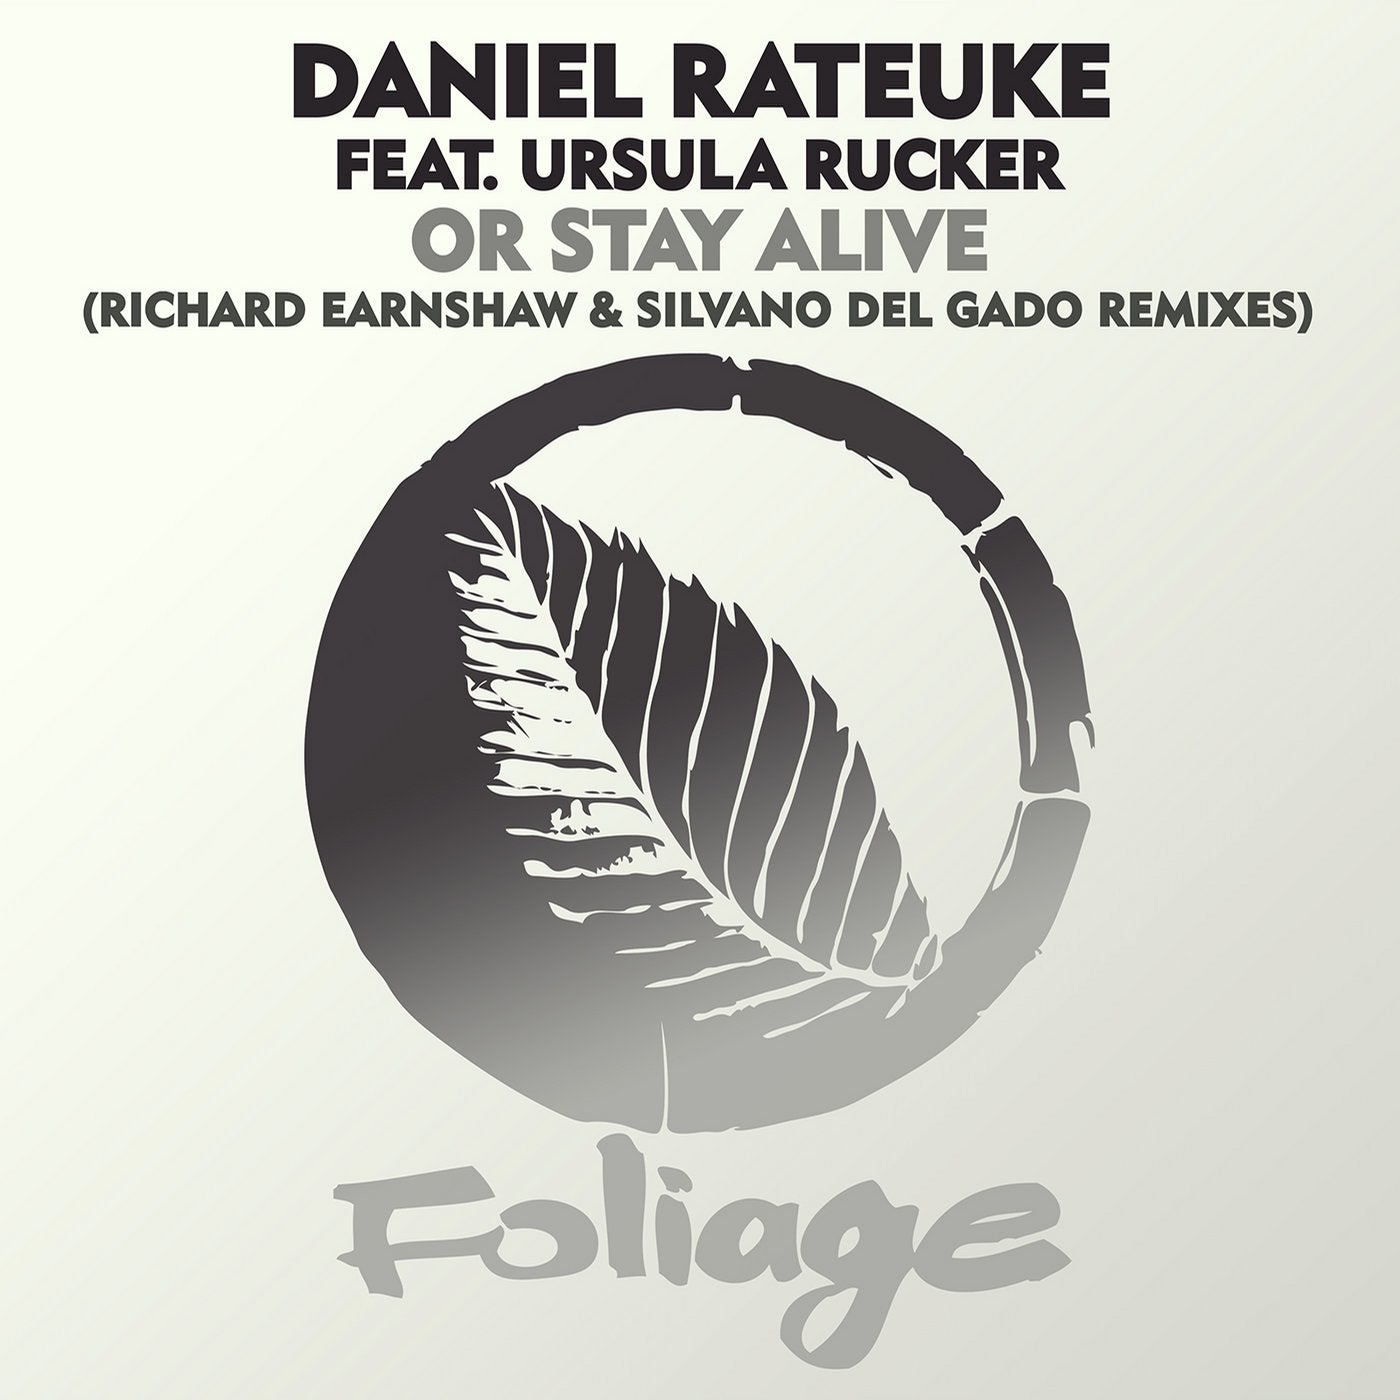 Or Stay Alive (Richard Earnshaw & Silvano Del Gado Remixes)